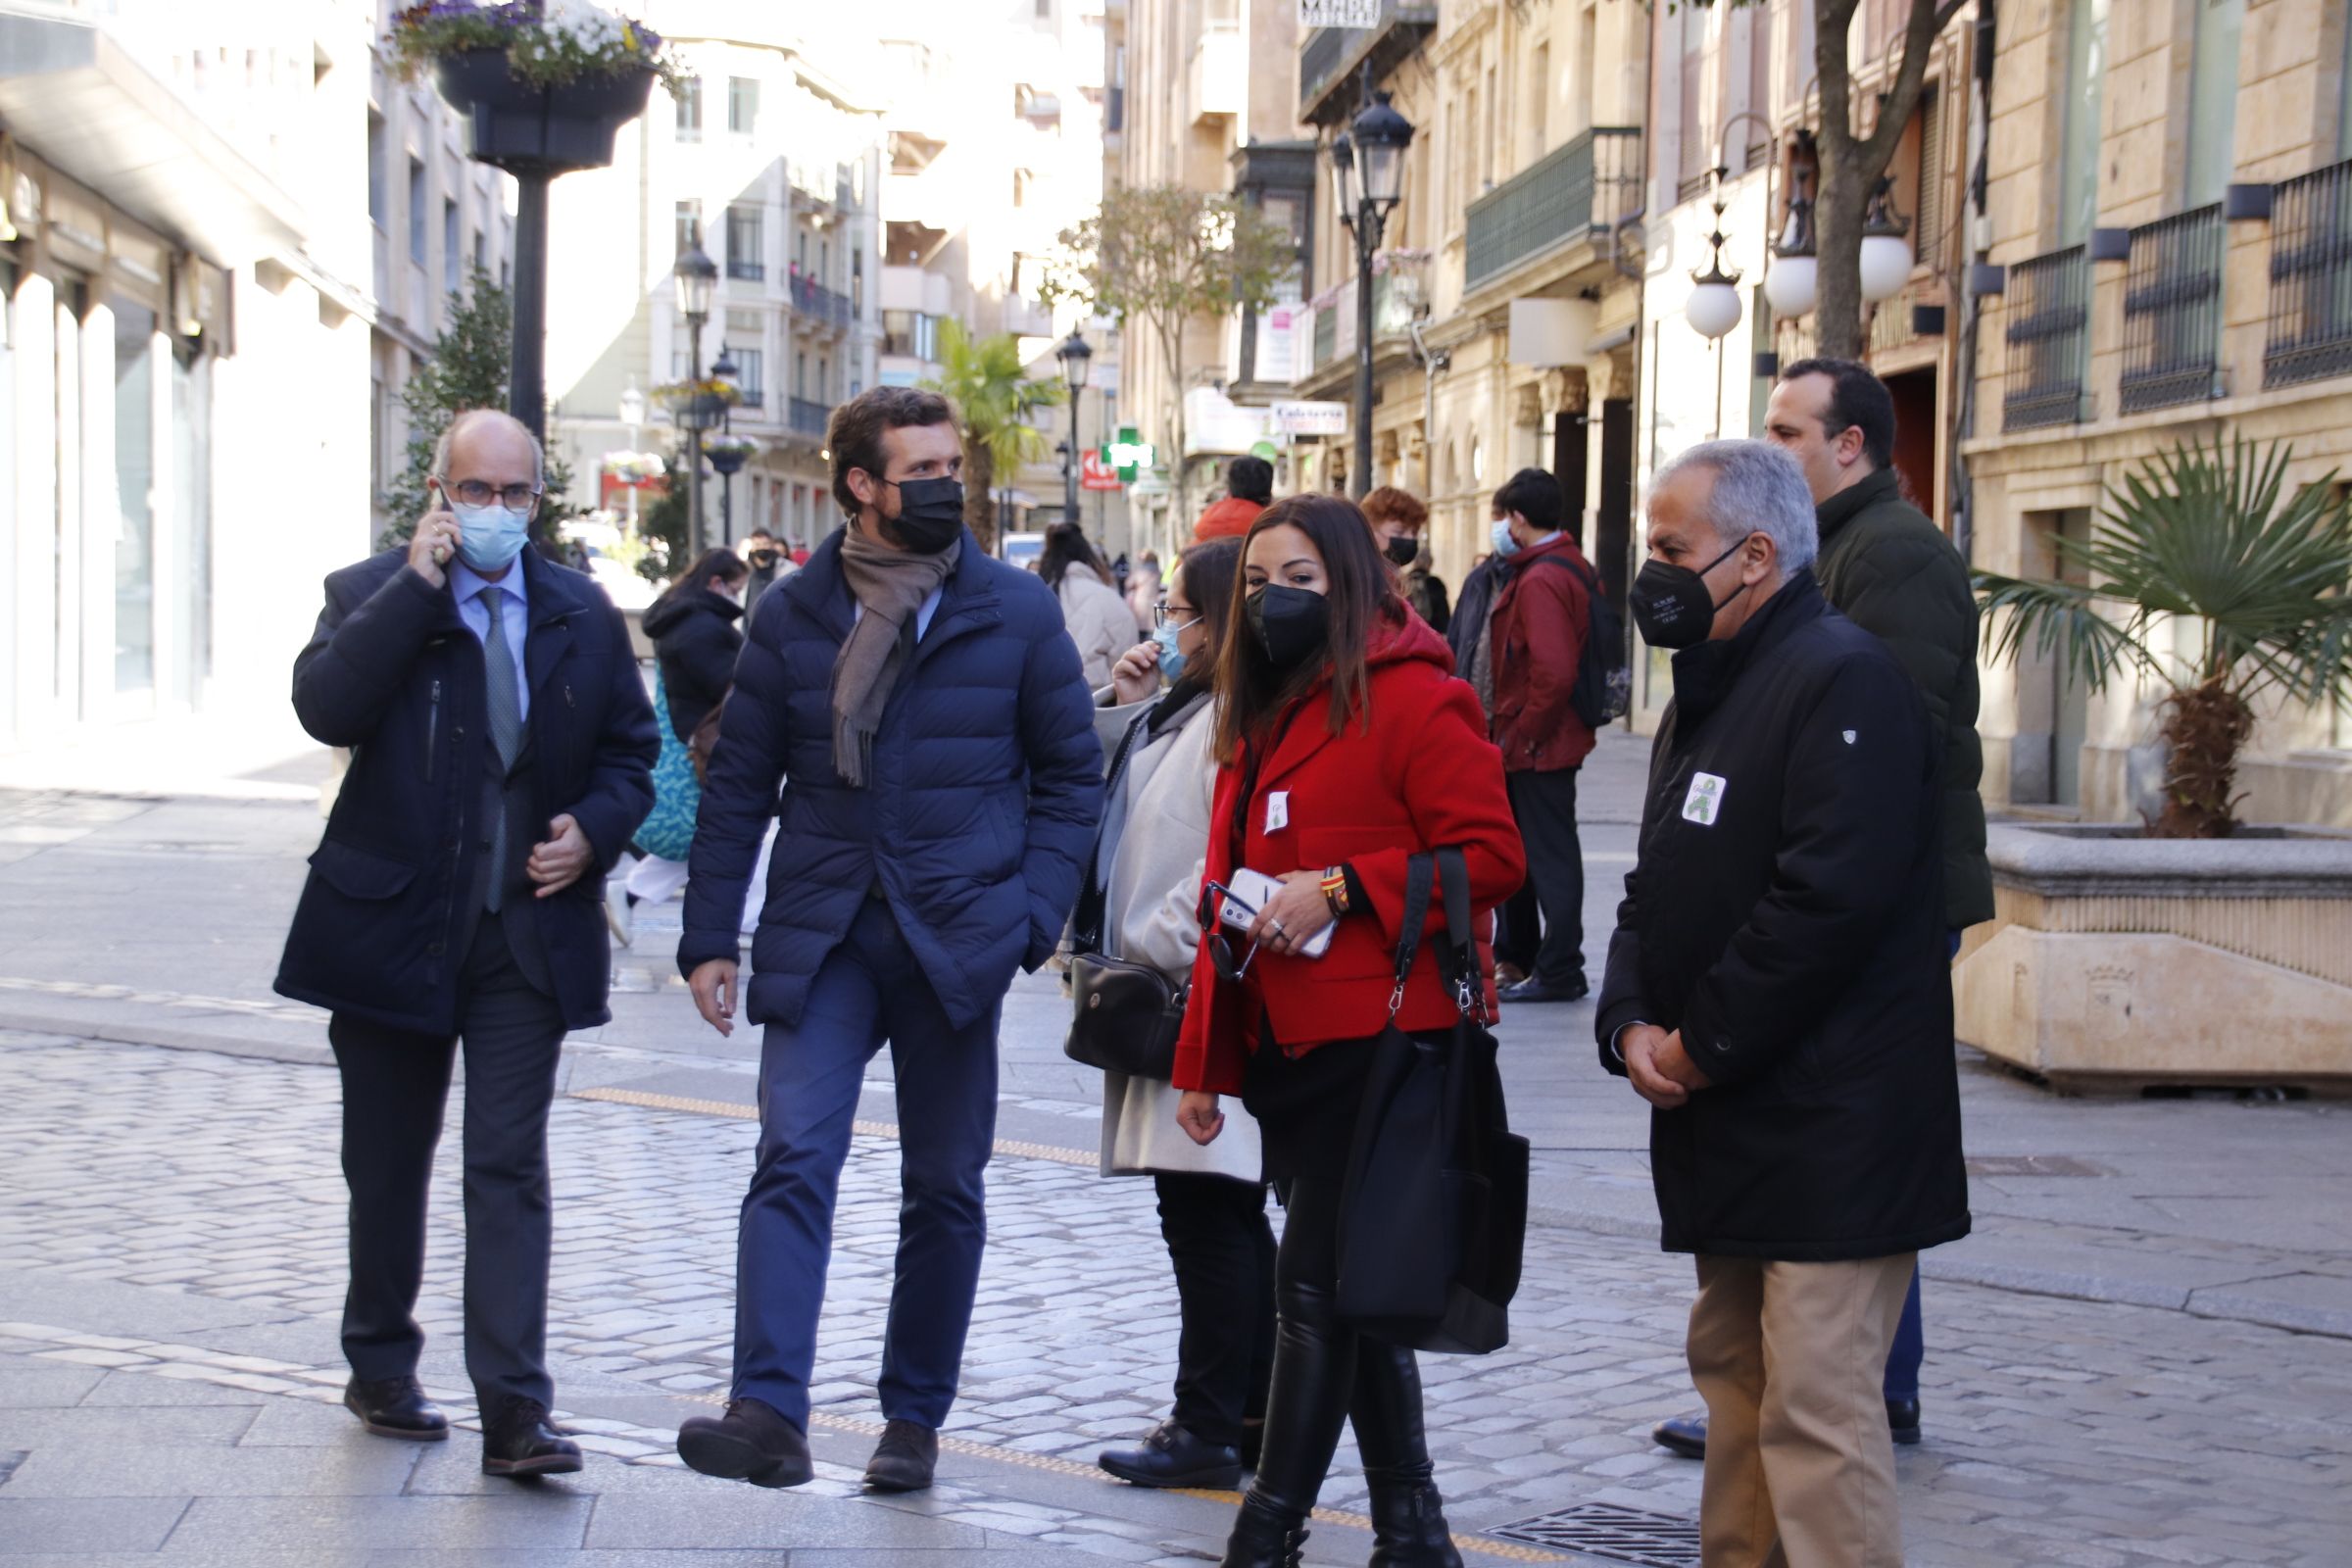 Pablo Casado paseando por las calles de Salamanca | Fotos: Andrea M